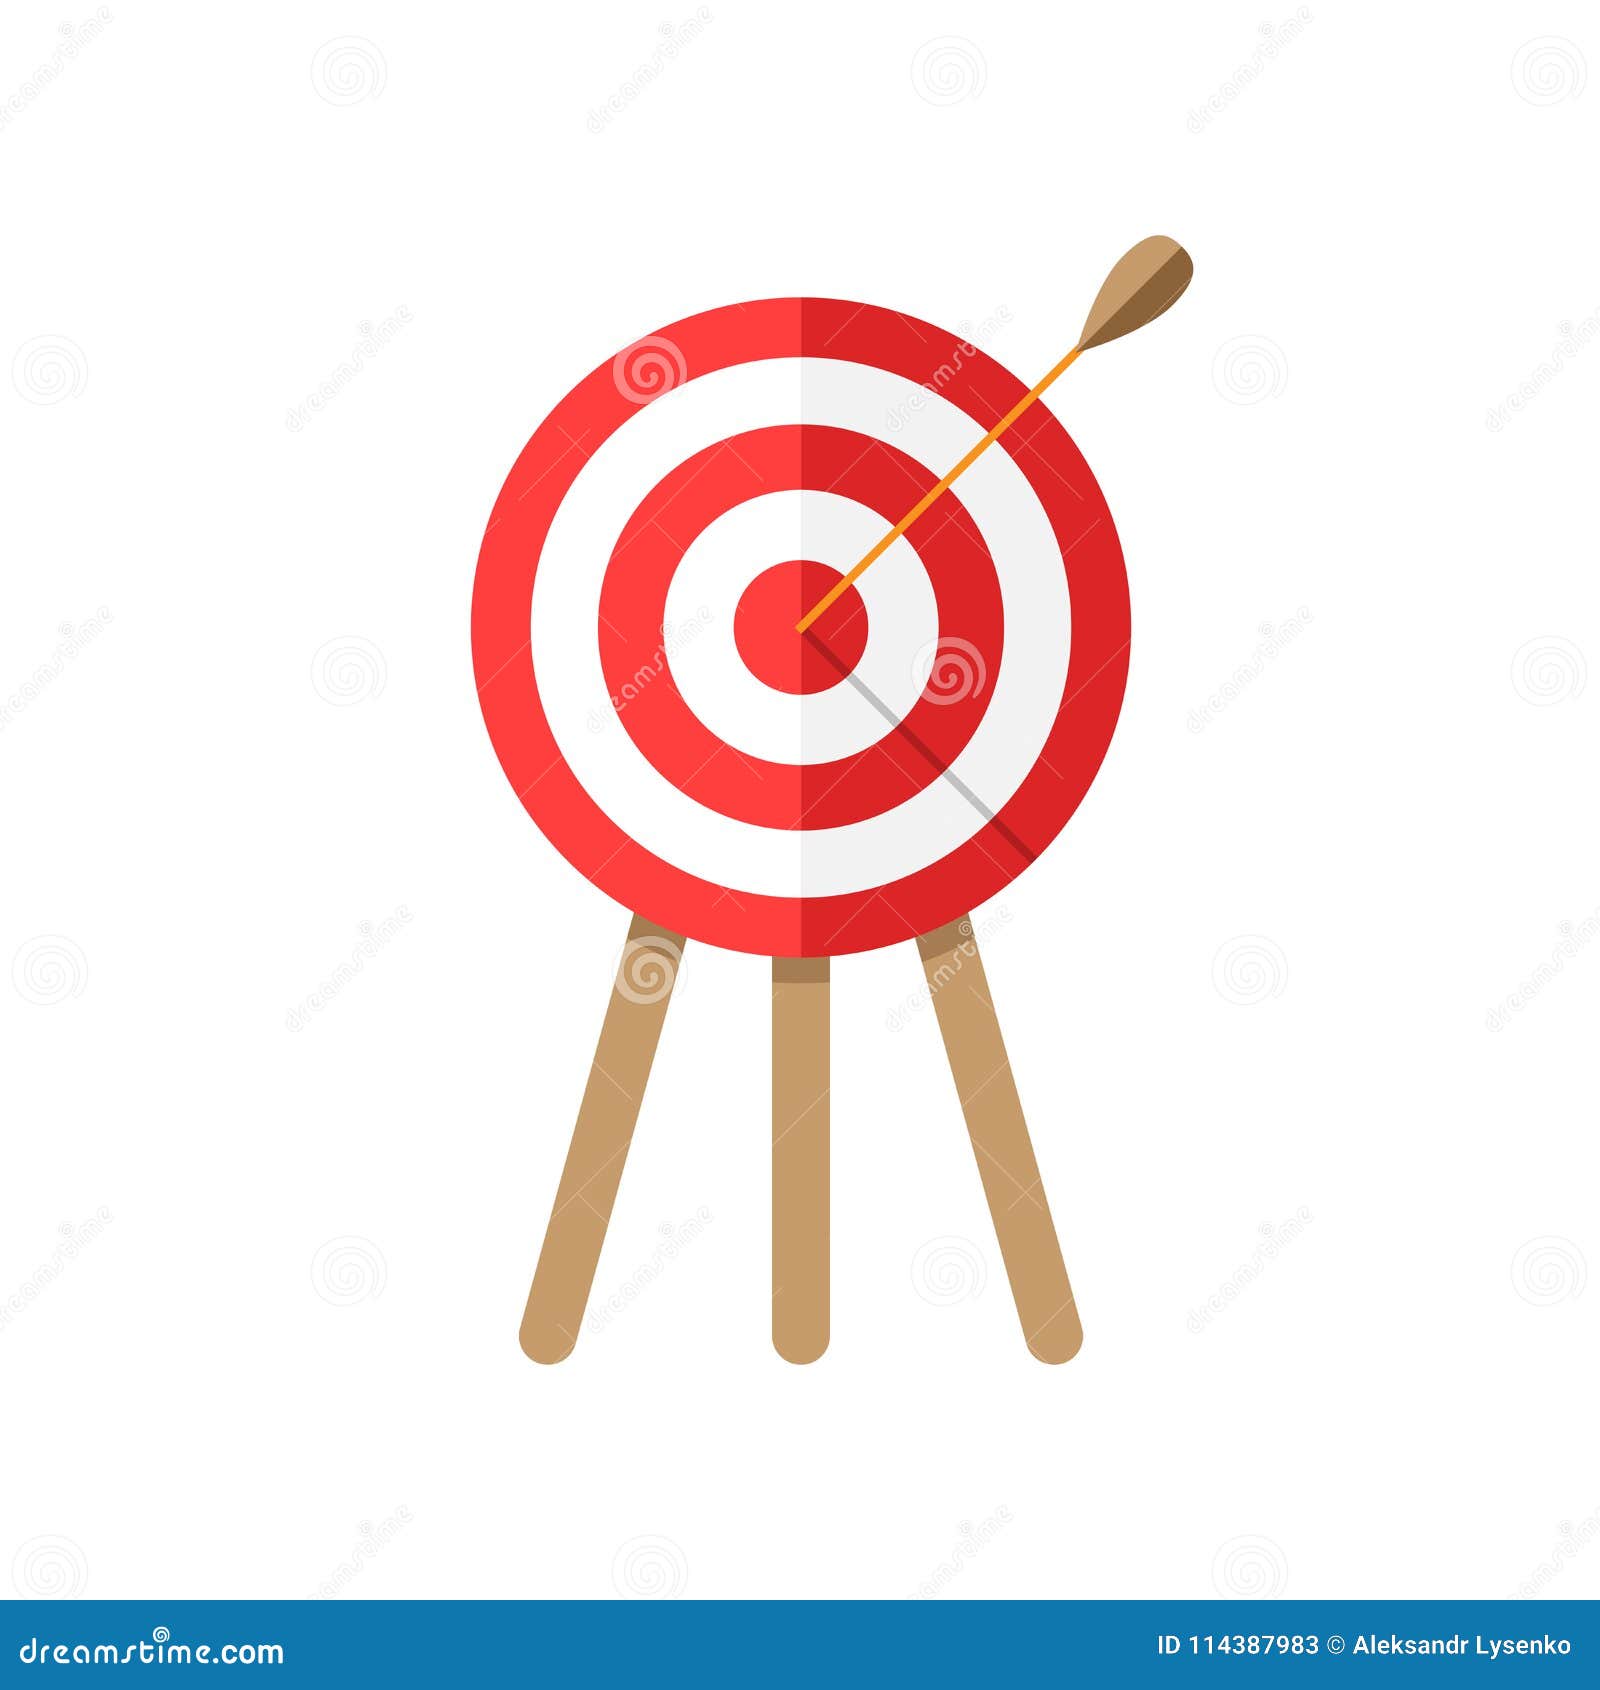 Target Game Darts Illustrations & Vectors